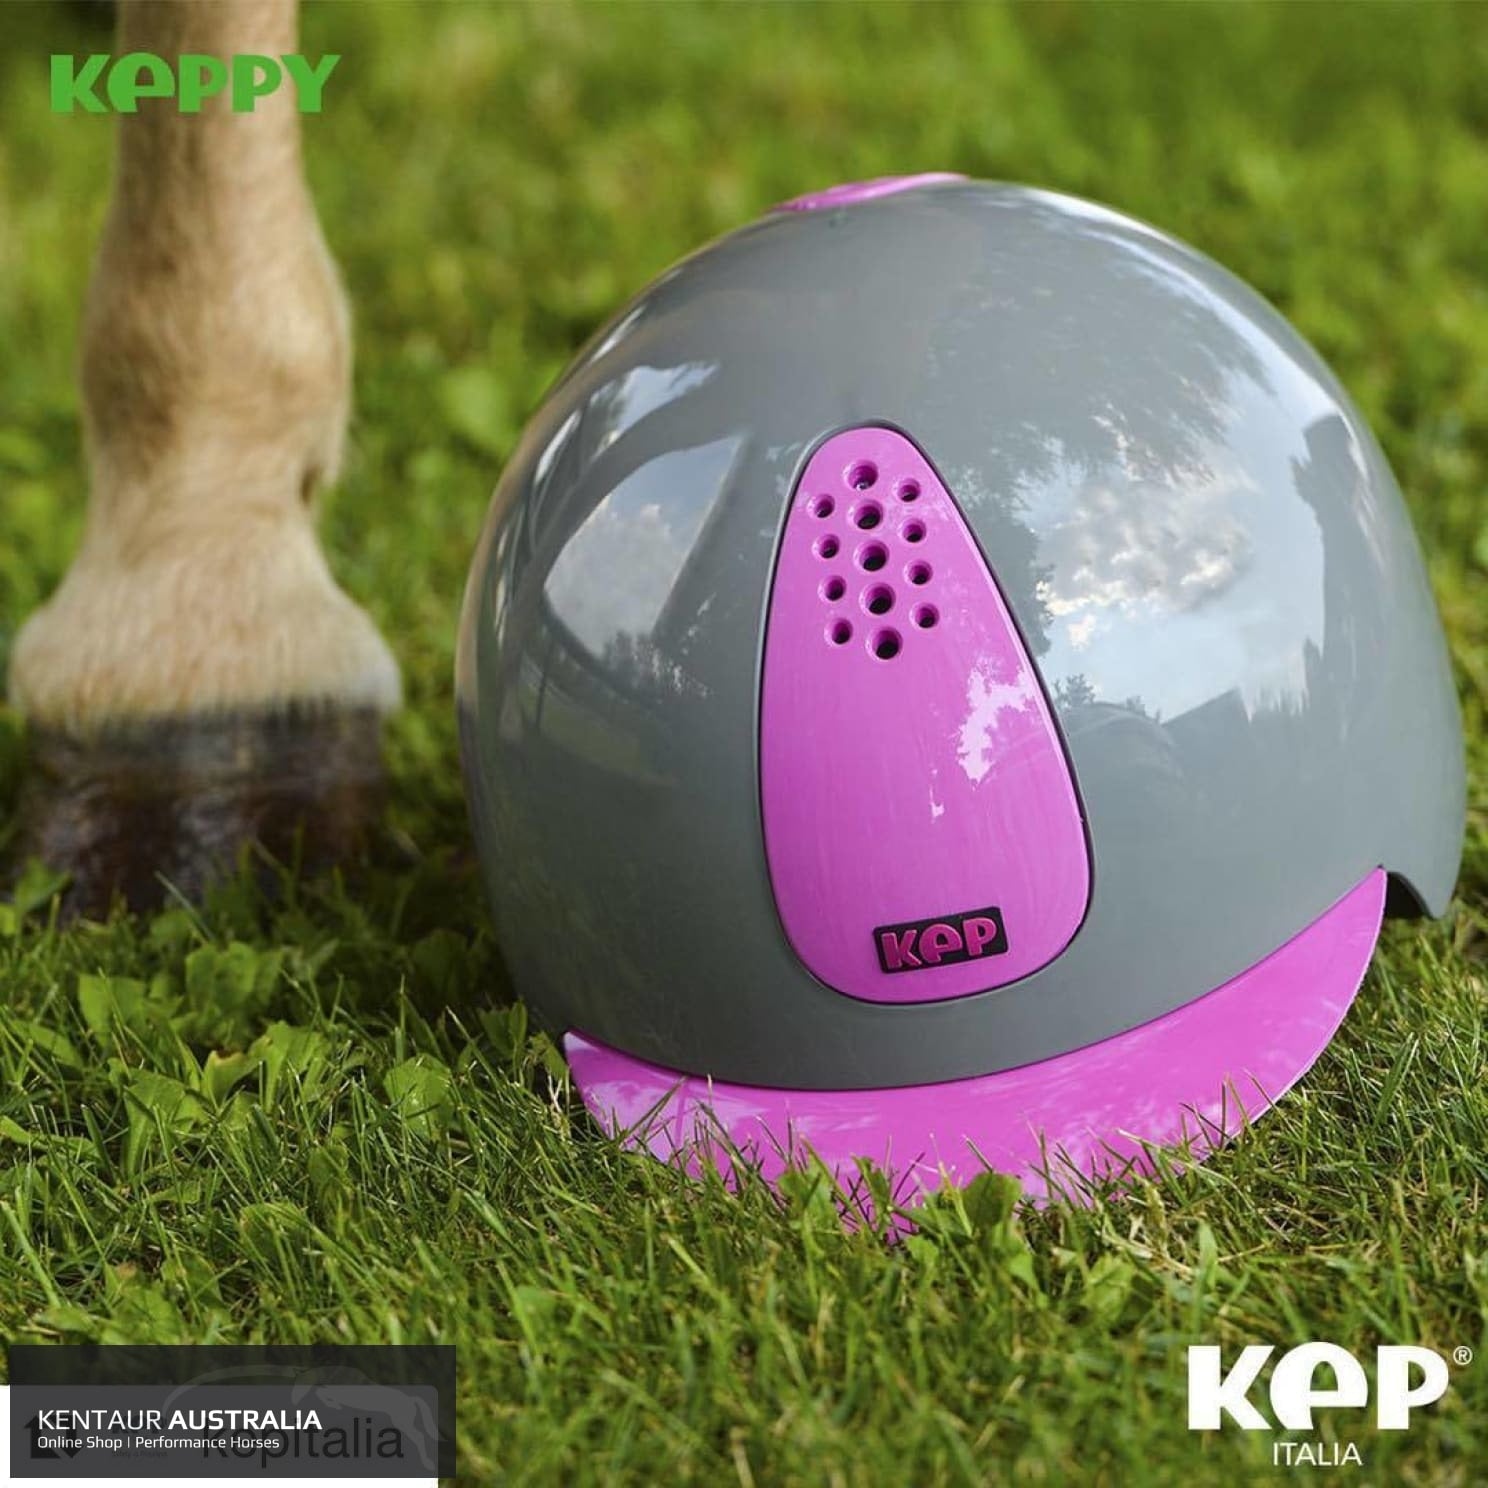 KEP ‘KEPPY’ Kids Helmet General